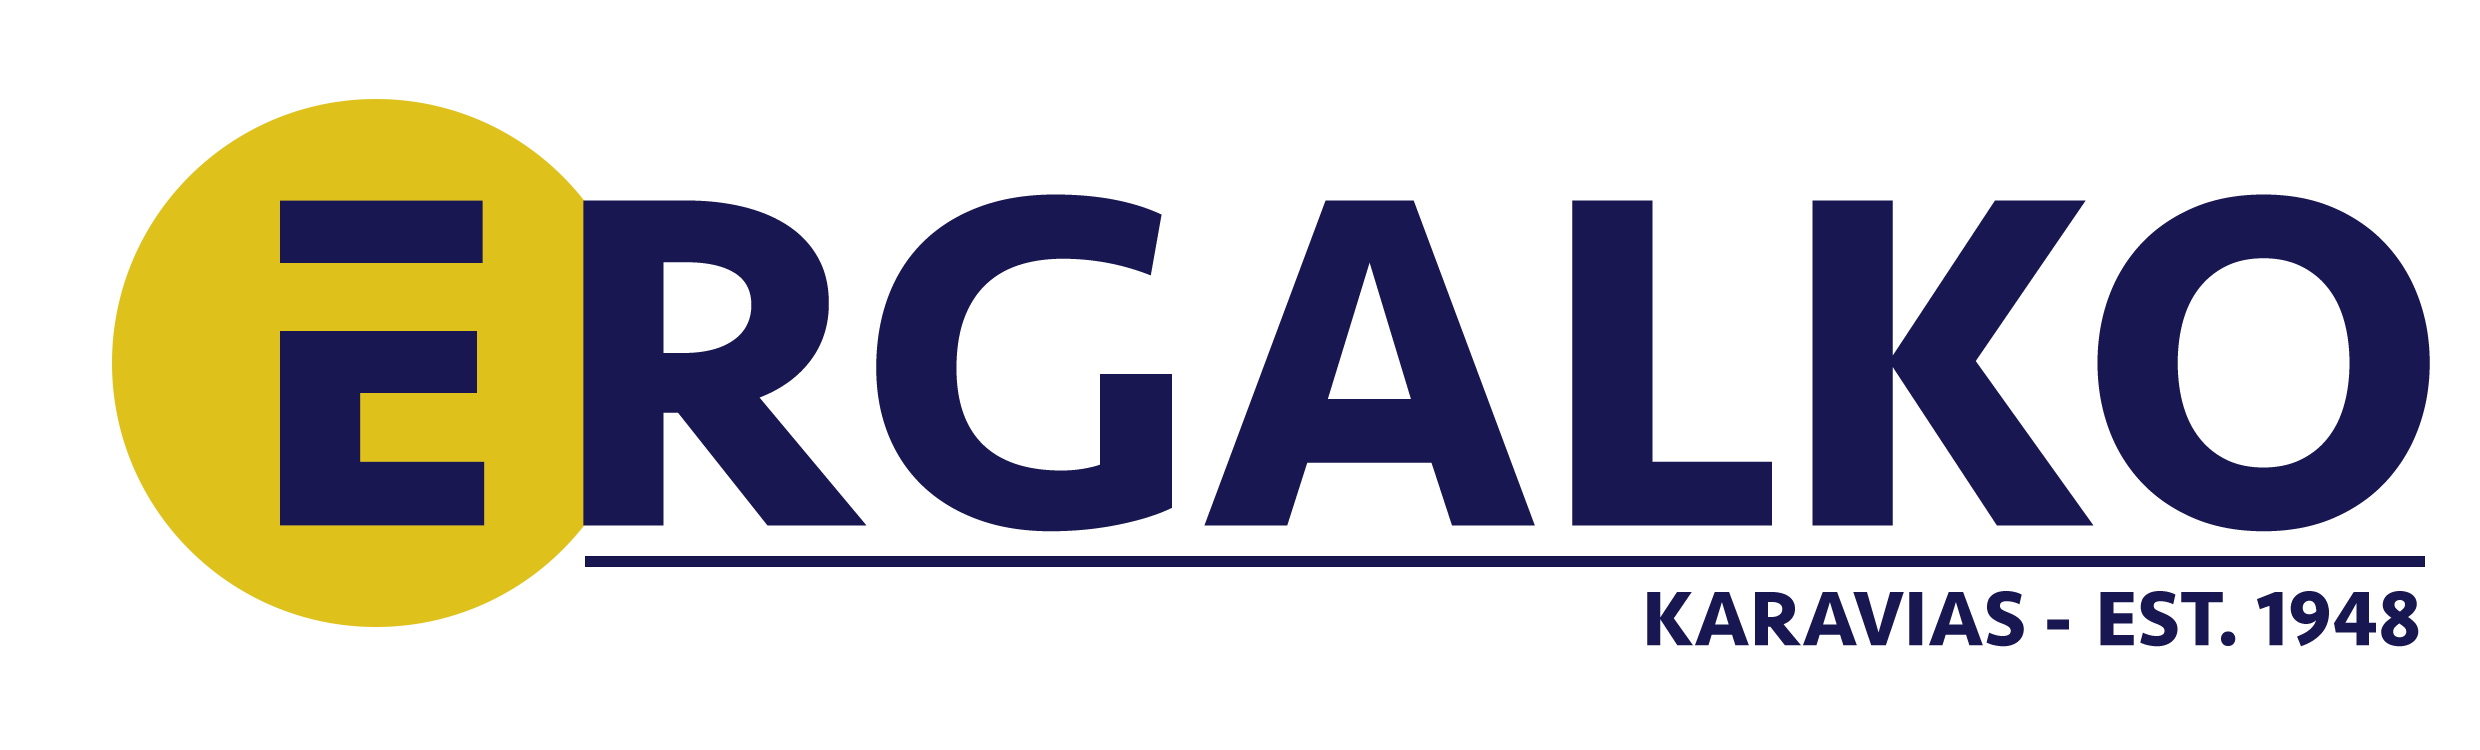 ergalko logo mobile